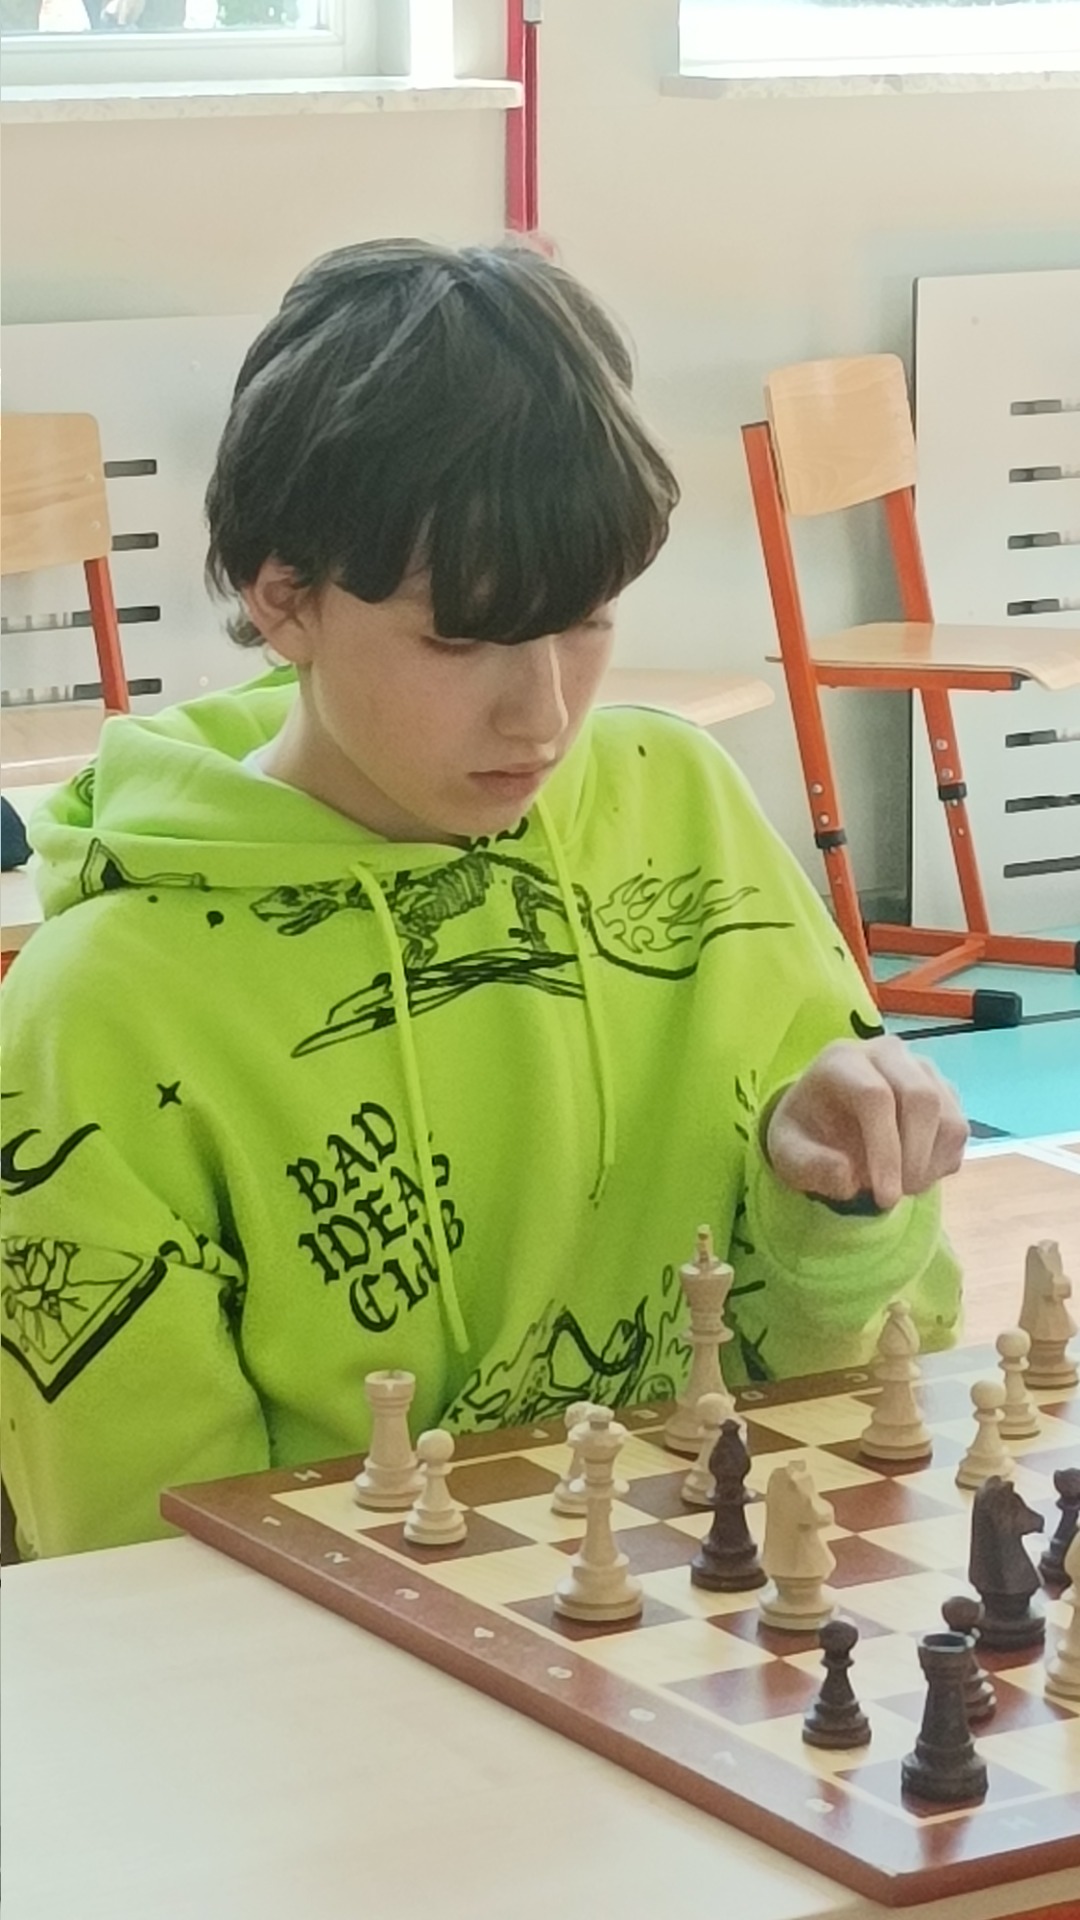 Uczeń rozgrywający partię w szachy.